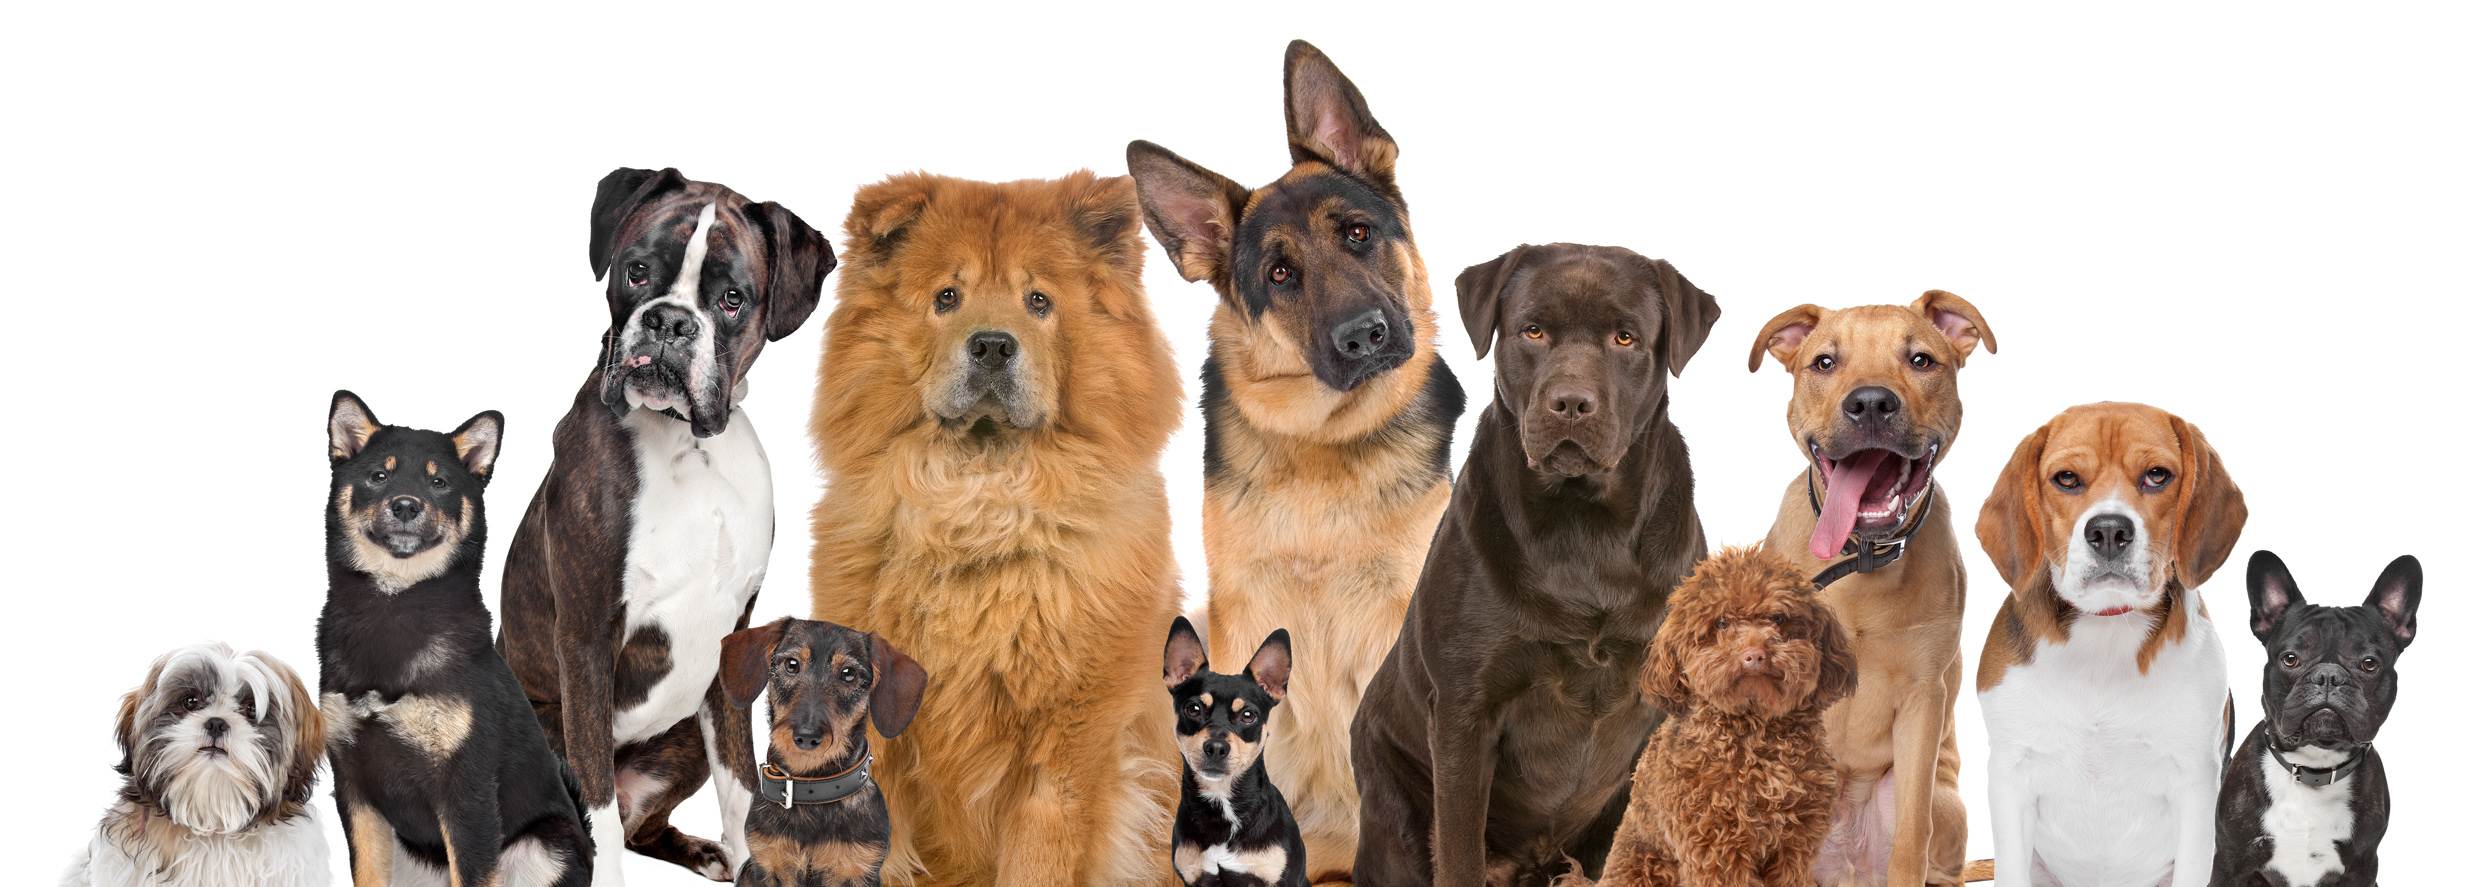 Волкодавы — фото, какие это породы собак, как они выглядят и почему причисляются к этой группе